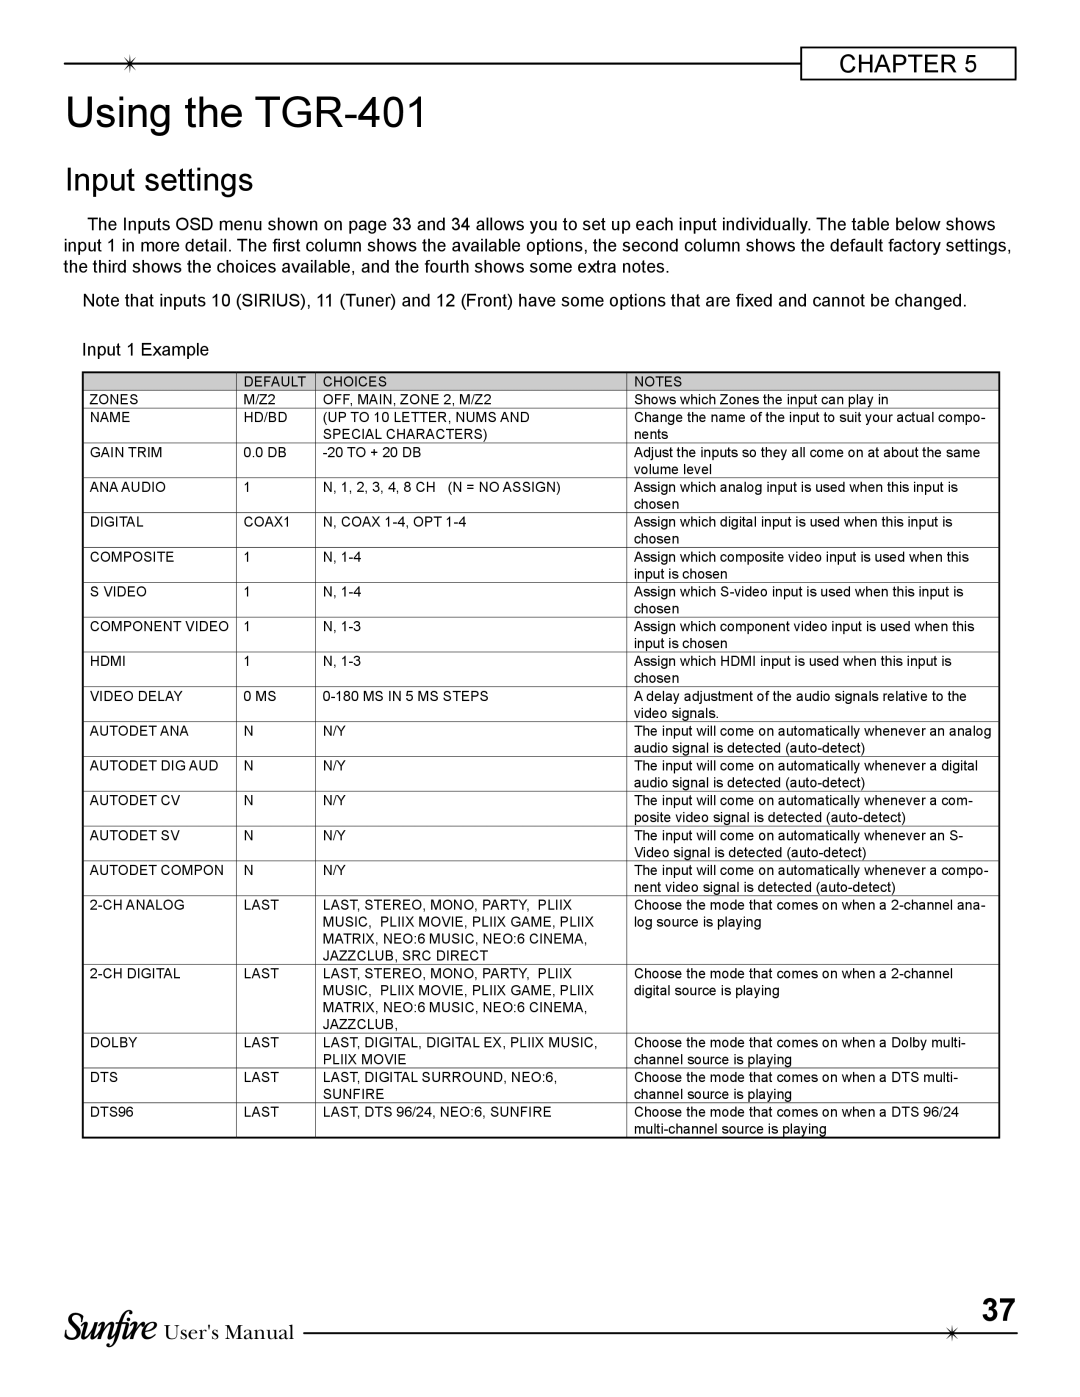 Sunfire TGR-401-230 manual Using the TGR-401, Input settings, Users Manual 